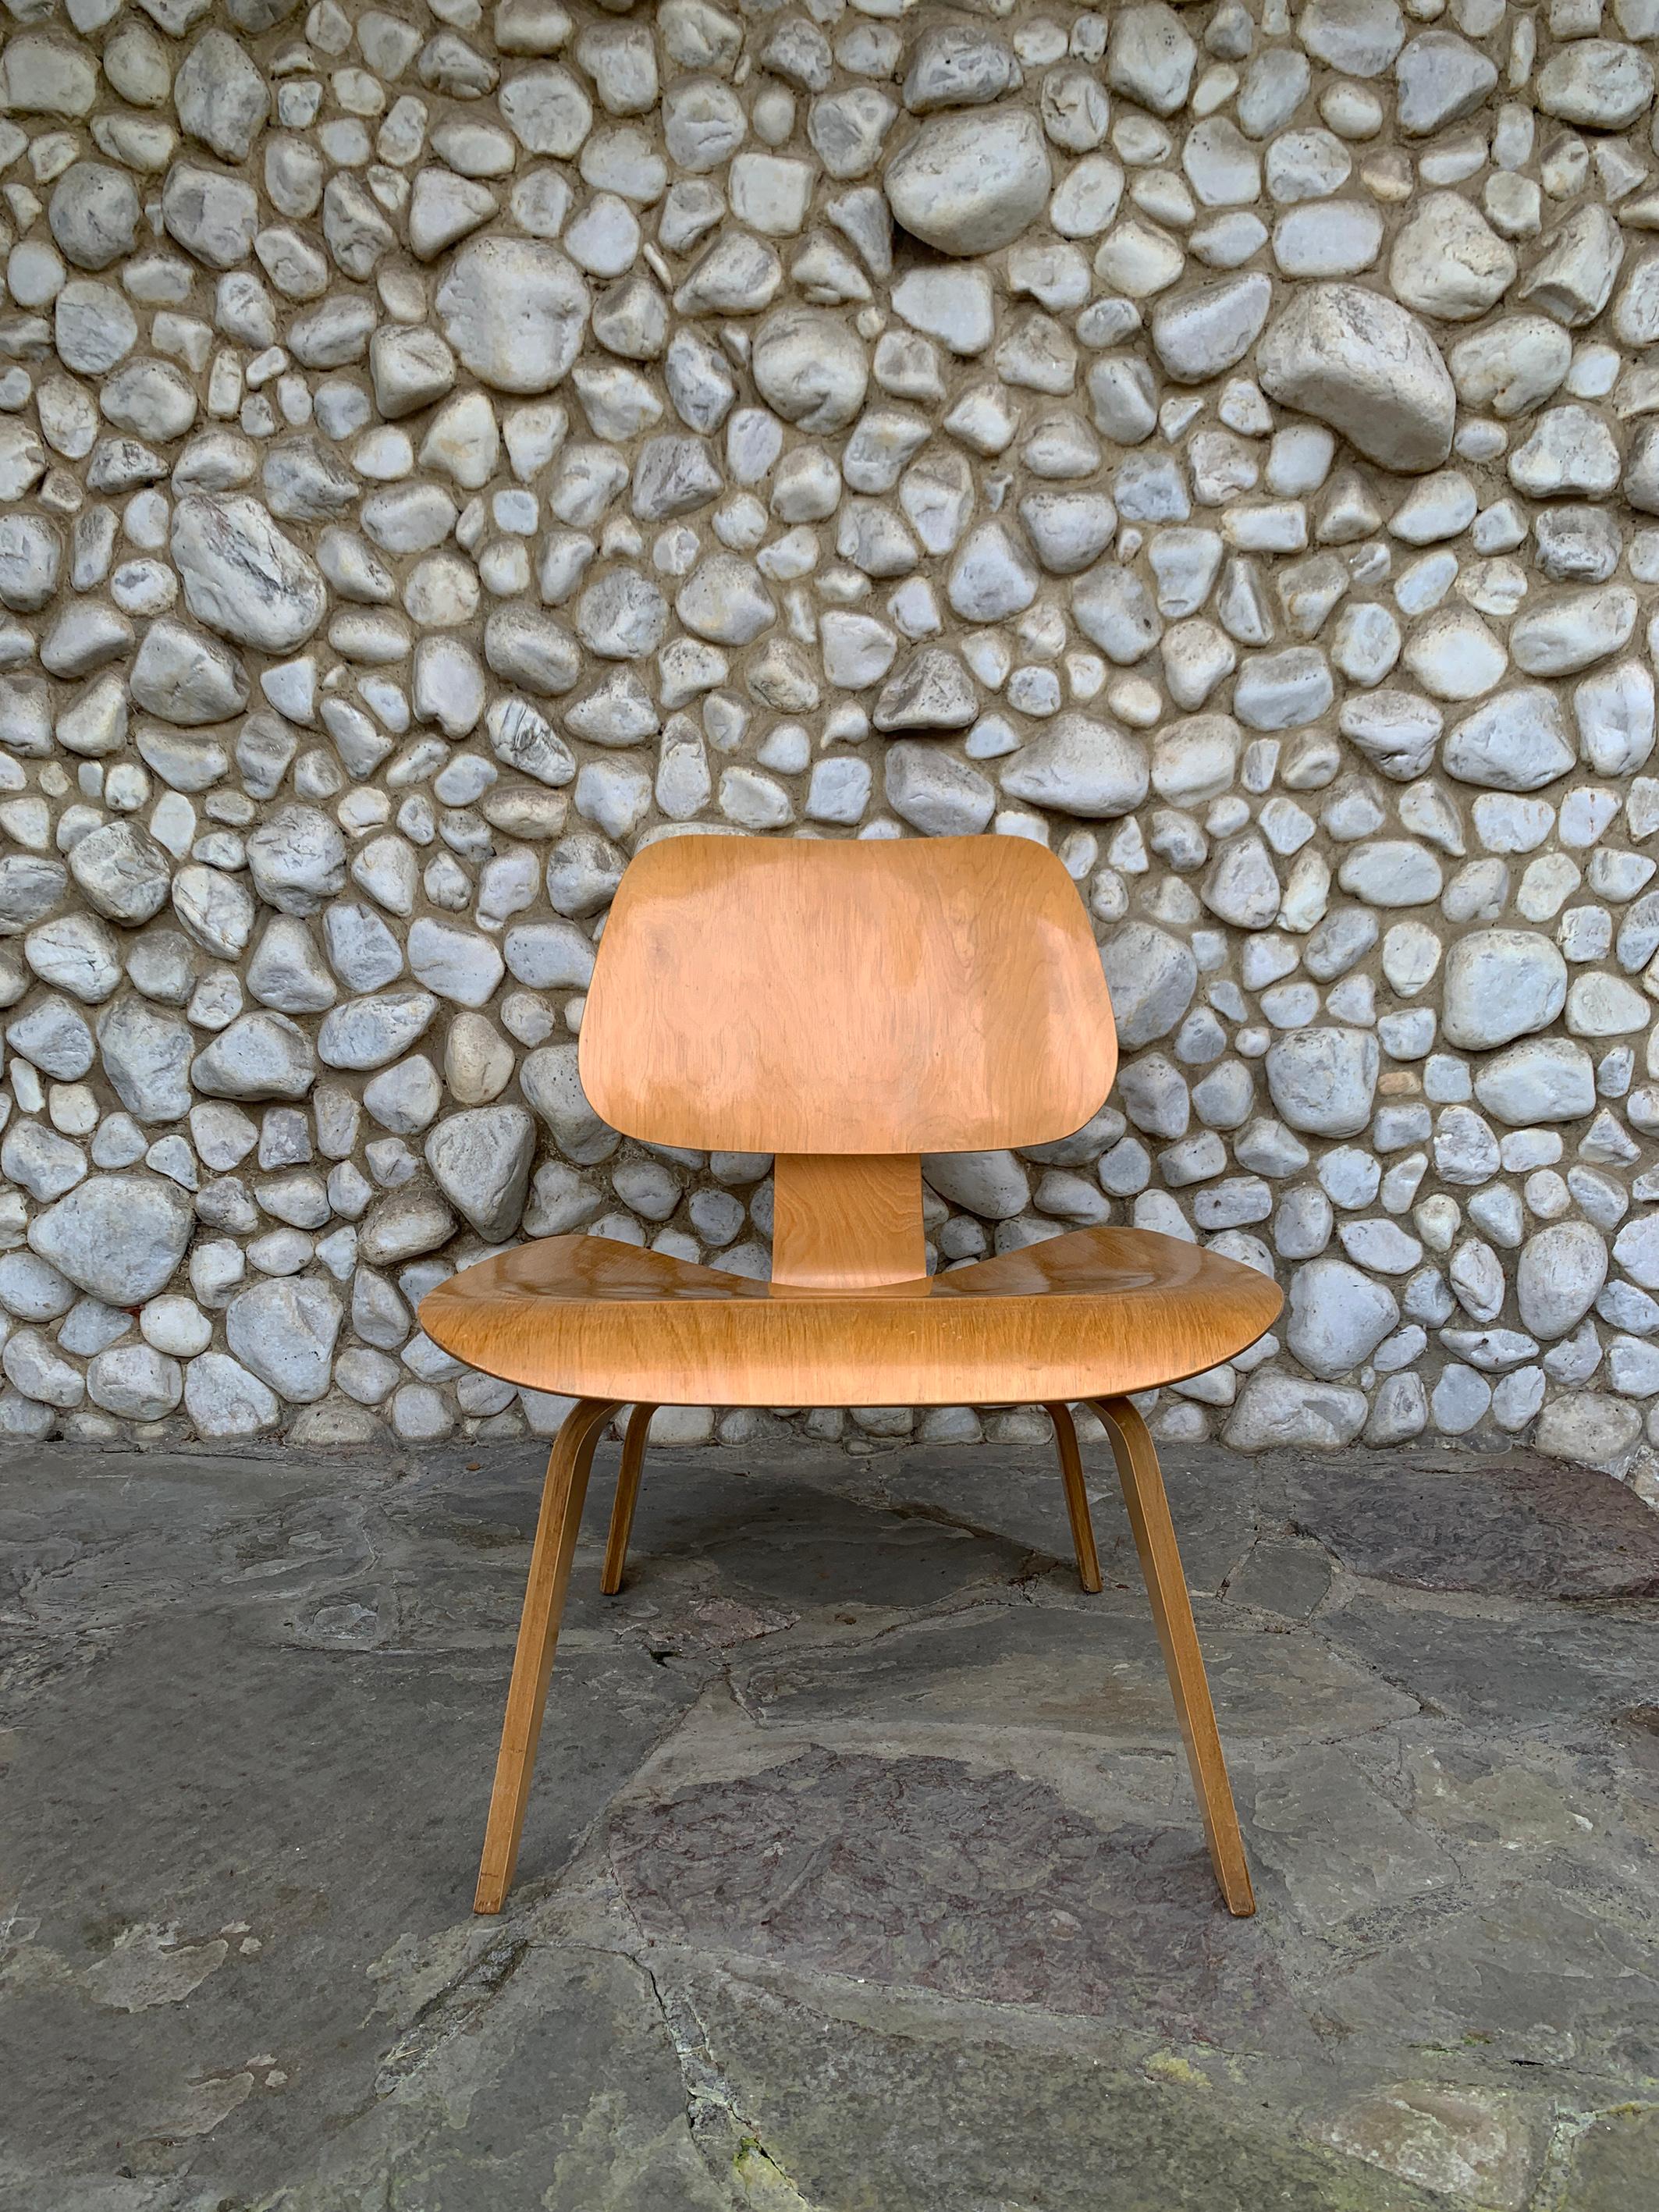 Una de las primeras LCW (Lounge Chair Wood) de abedul.

Producida por Herman Miller entre 1952 y 1958 (la producción de la LCW se interrumpió en 1958 hasta su reintroducción en 1994).   

Estado y acabado originales. Hoy en día es cada vez más